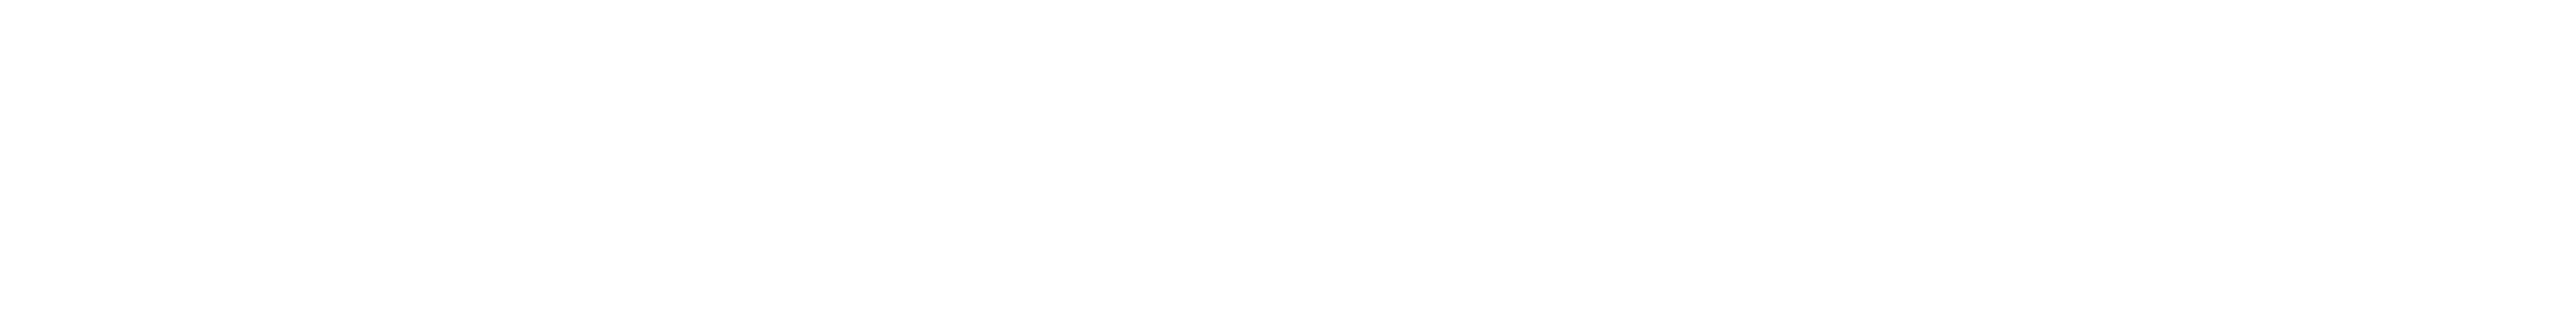 Titucus logo white